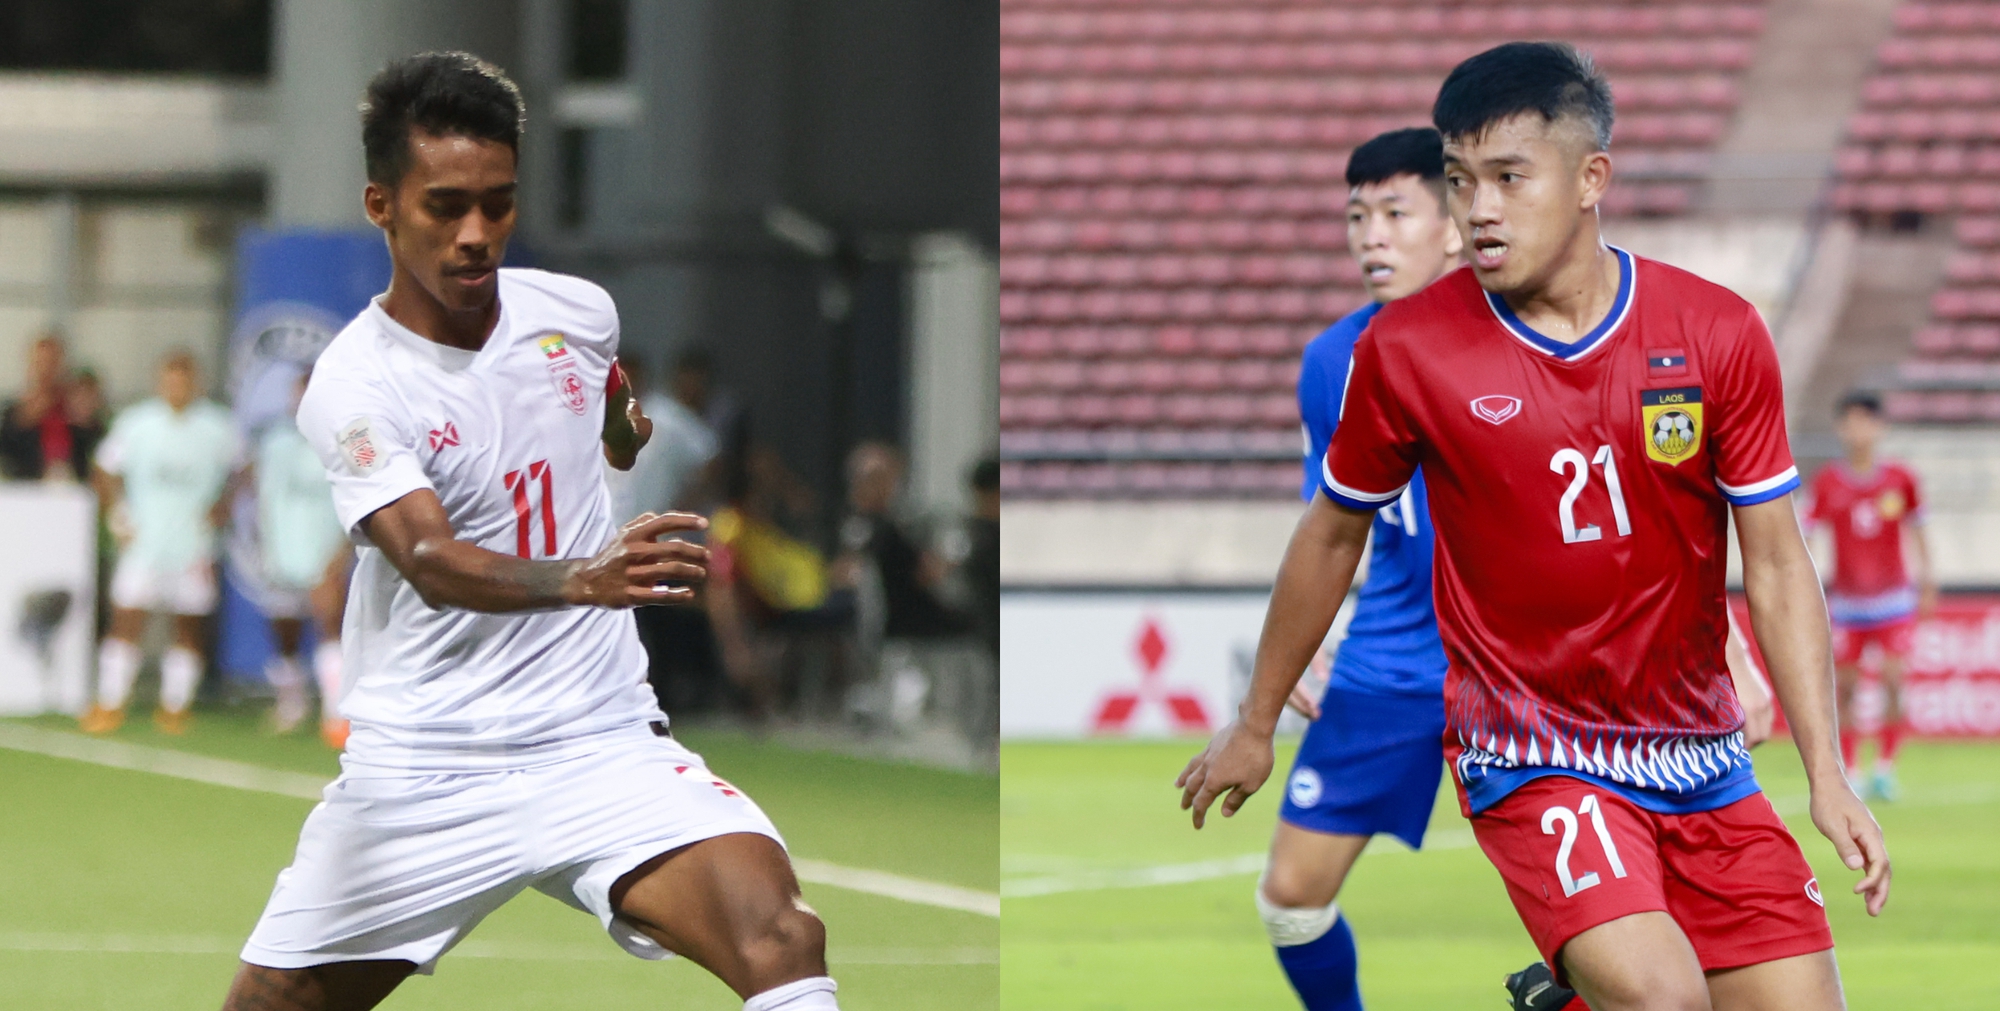 Trận đấu giữa Myanmar và Lào vào năm 2024 rực lửa với tỉ số kịch tính. Các cầu thủ đã thi đấu nhiệt tình và mang về chiến thắng quý giá cho đội tuyển Myanmar. Điều này sẽ thúc đẩy bóng đá Myanmar và đưa nó lên tầm cao mới.